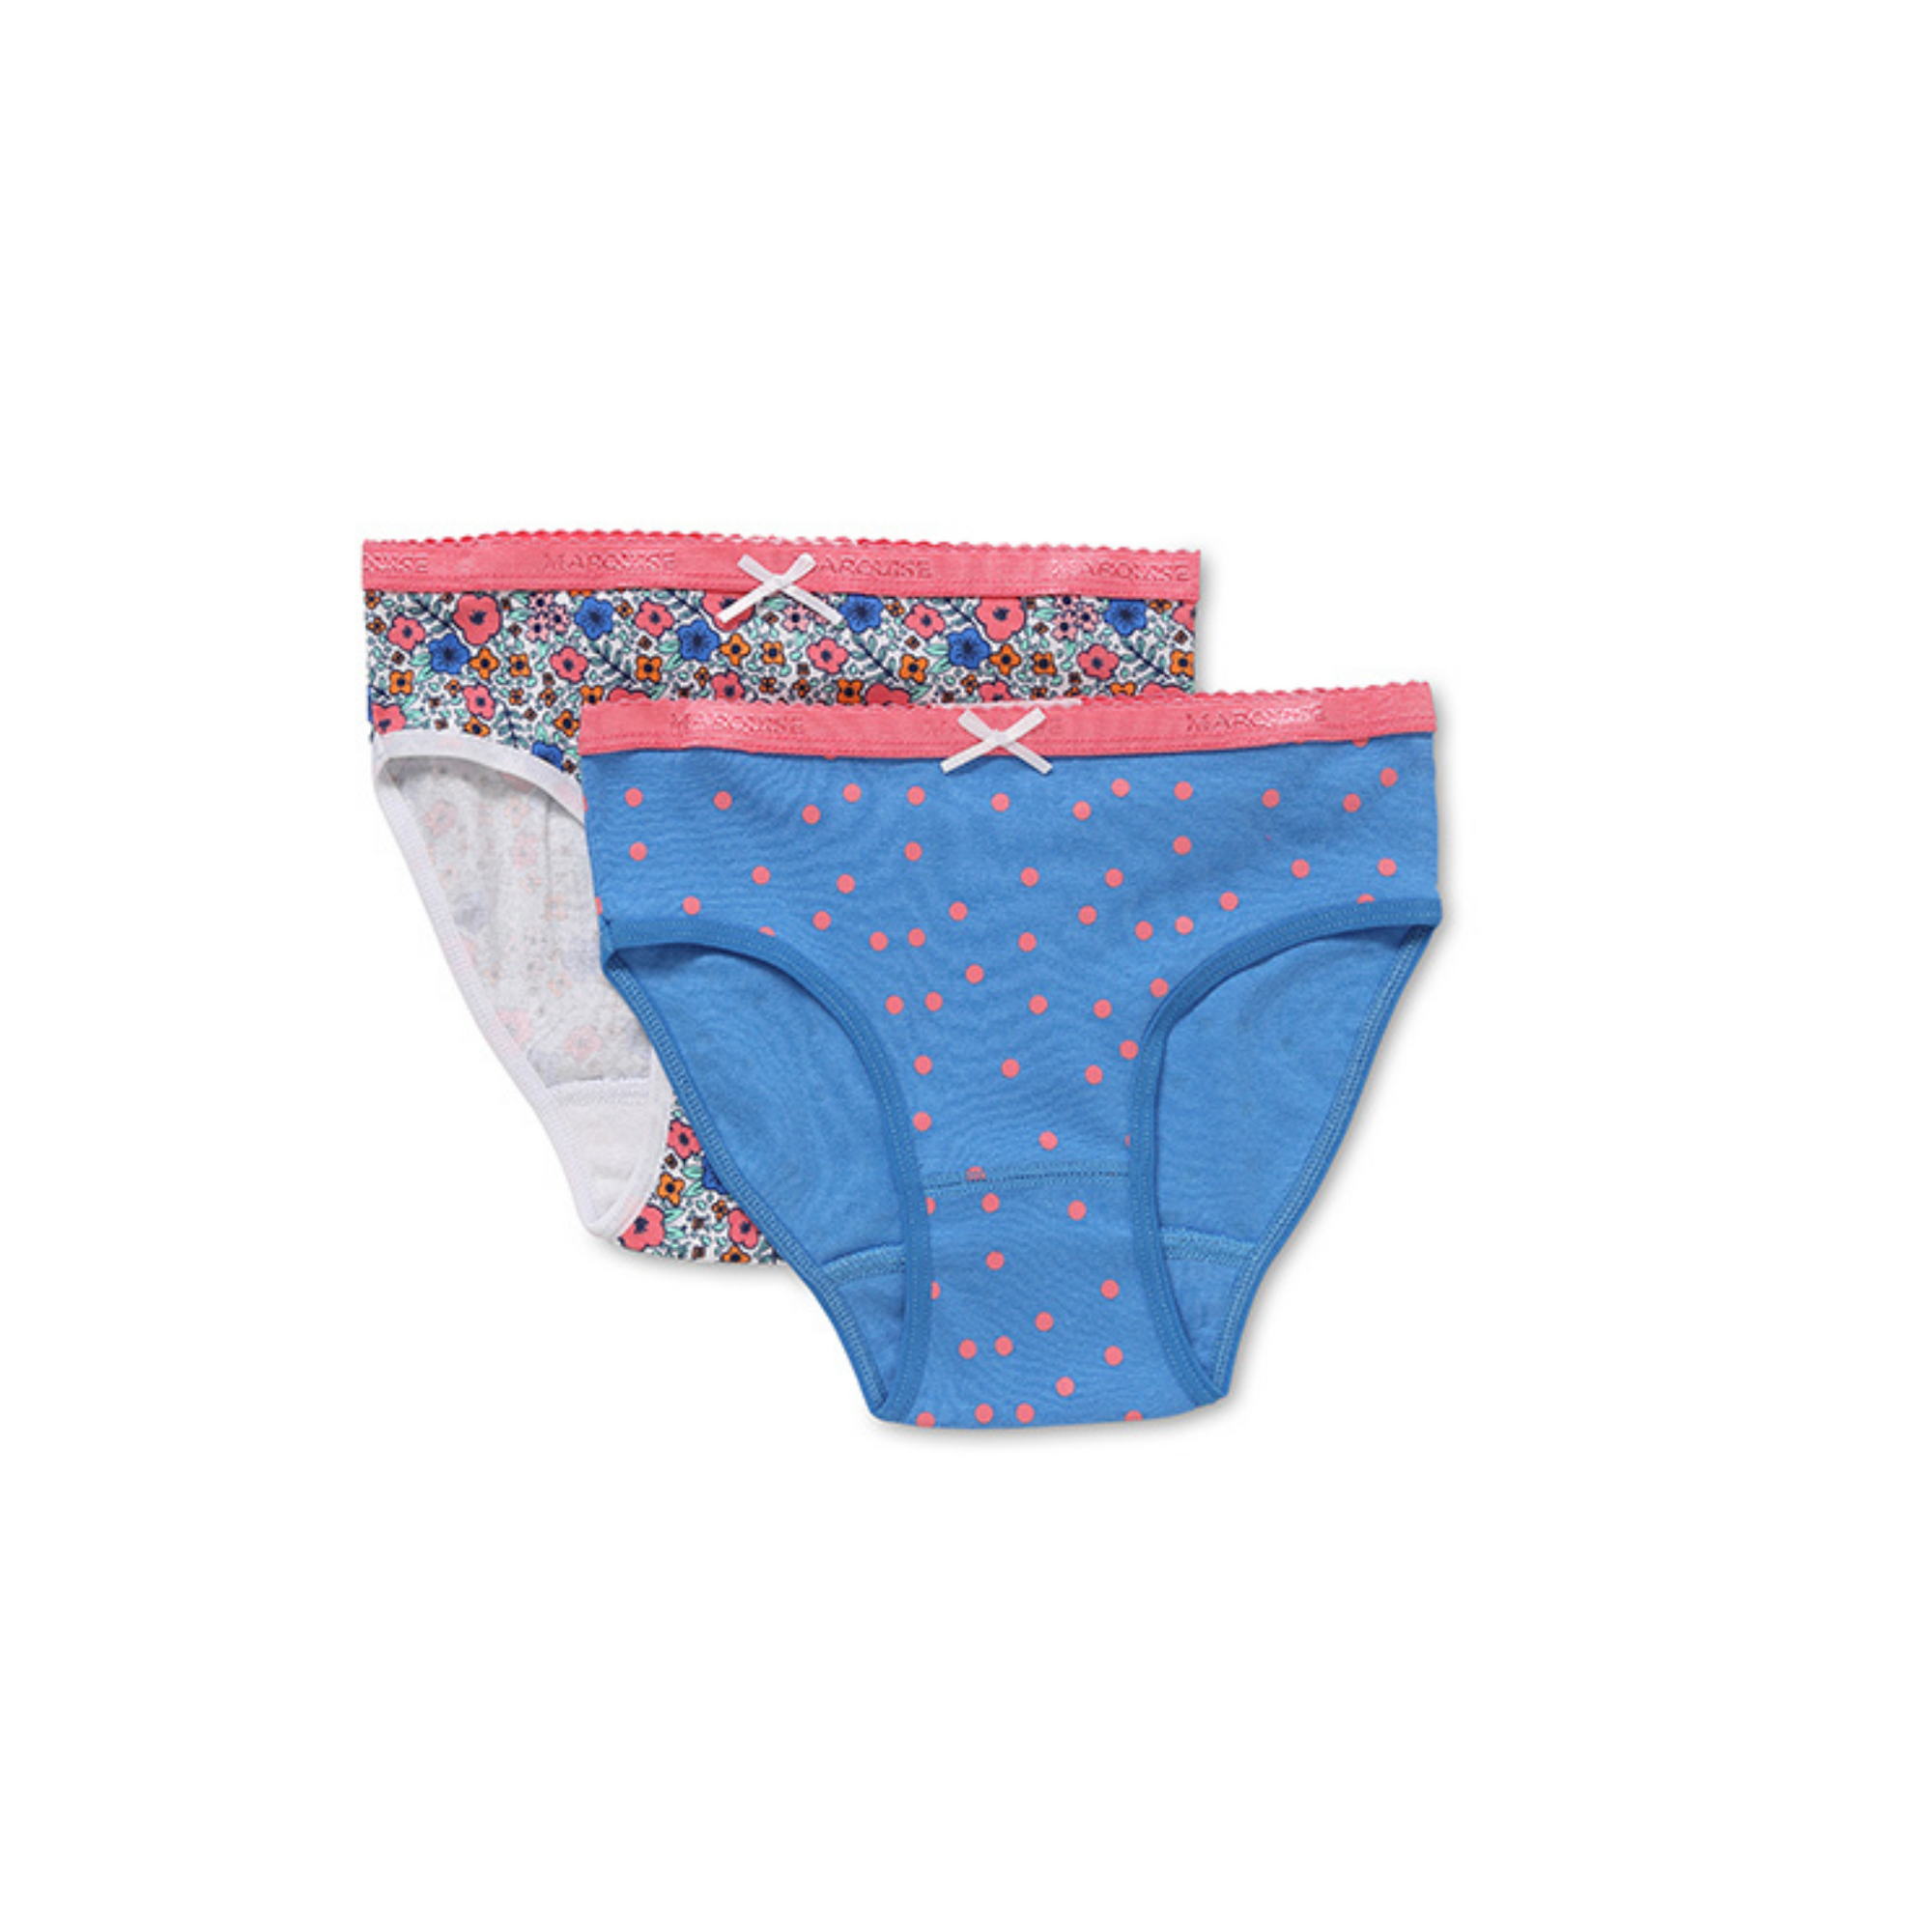 Marquise Ditsie Pink Spot Floral Girls 2 Pack Underwear - Blue